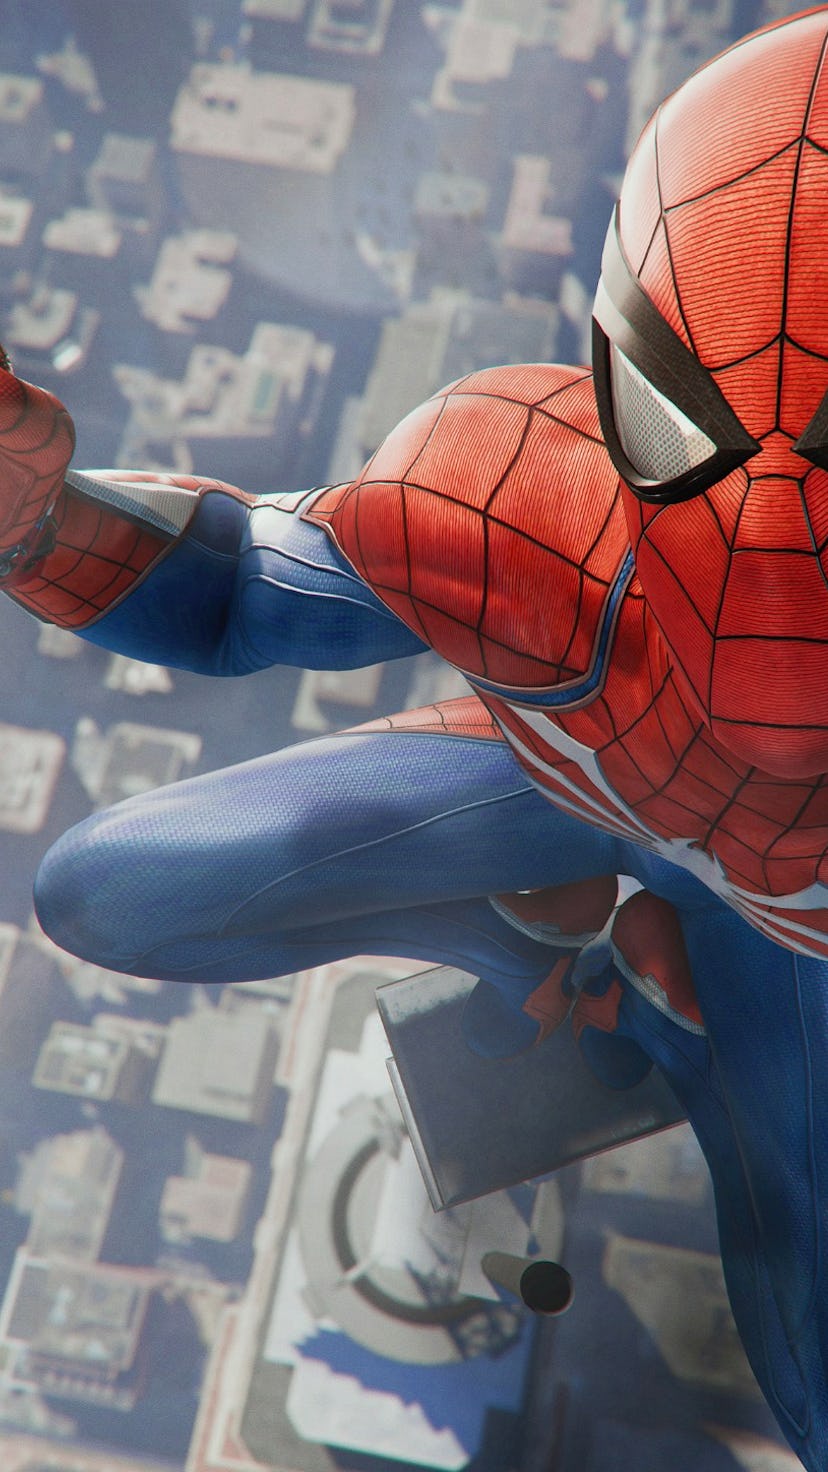 Spider-Man 4K selfie